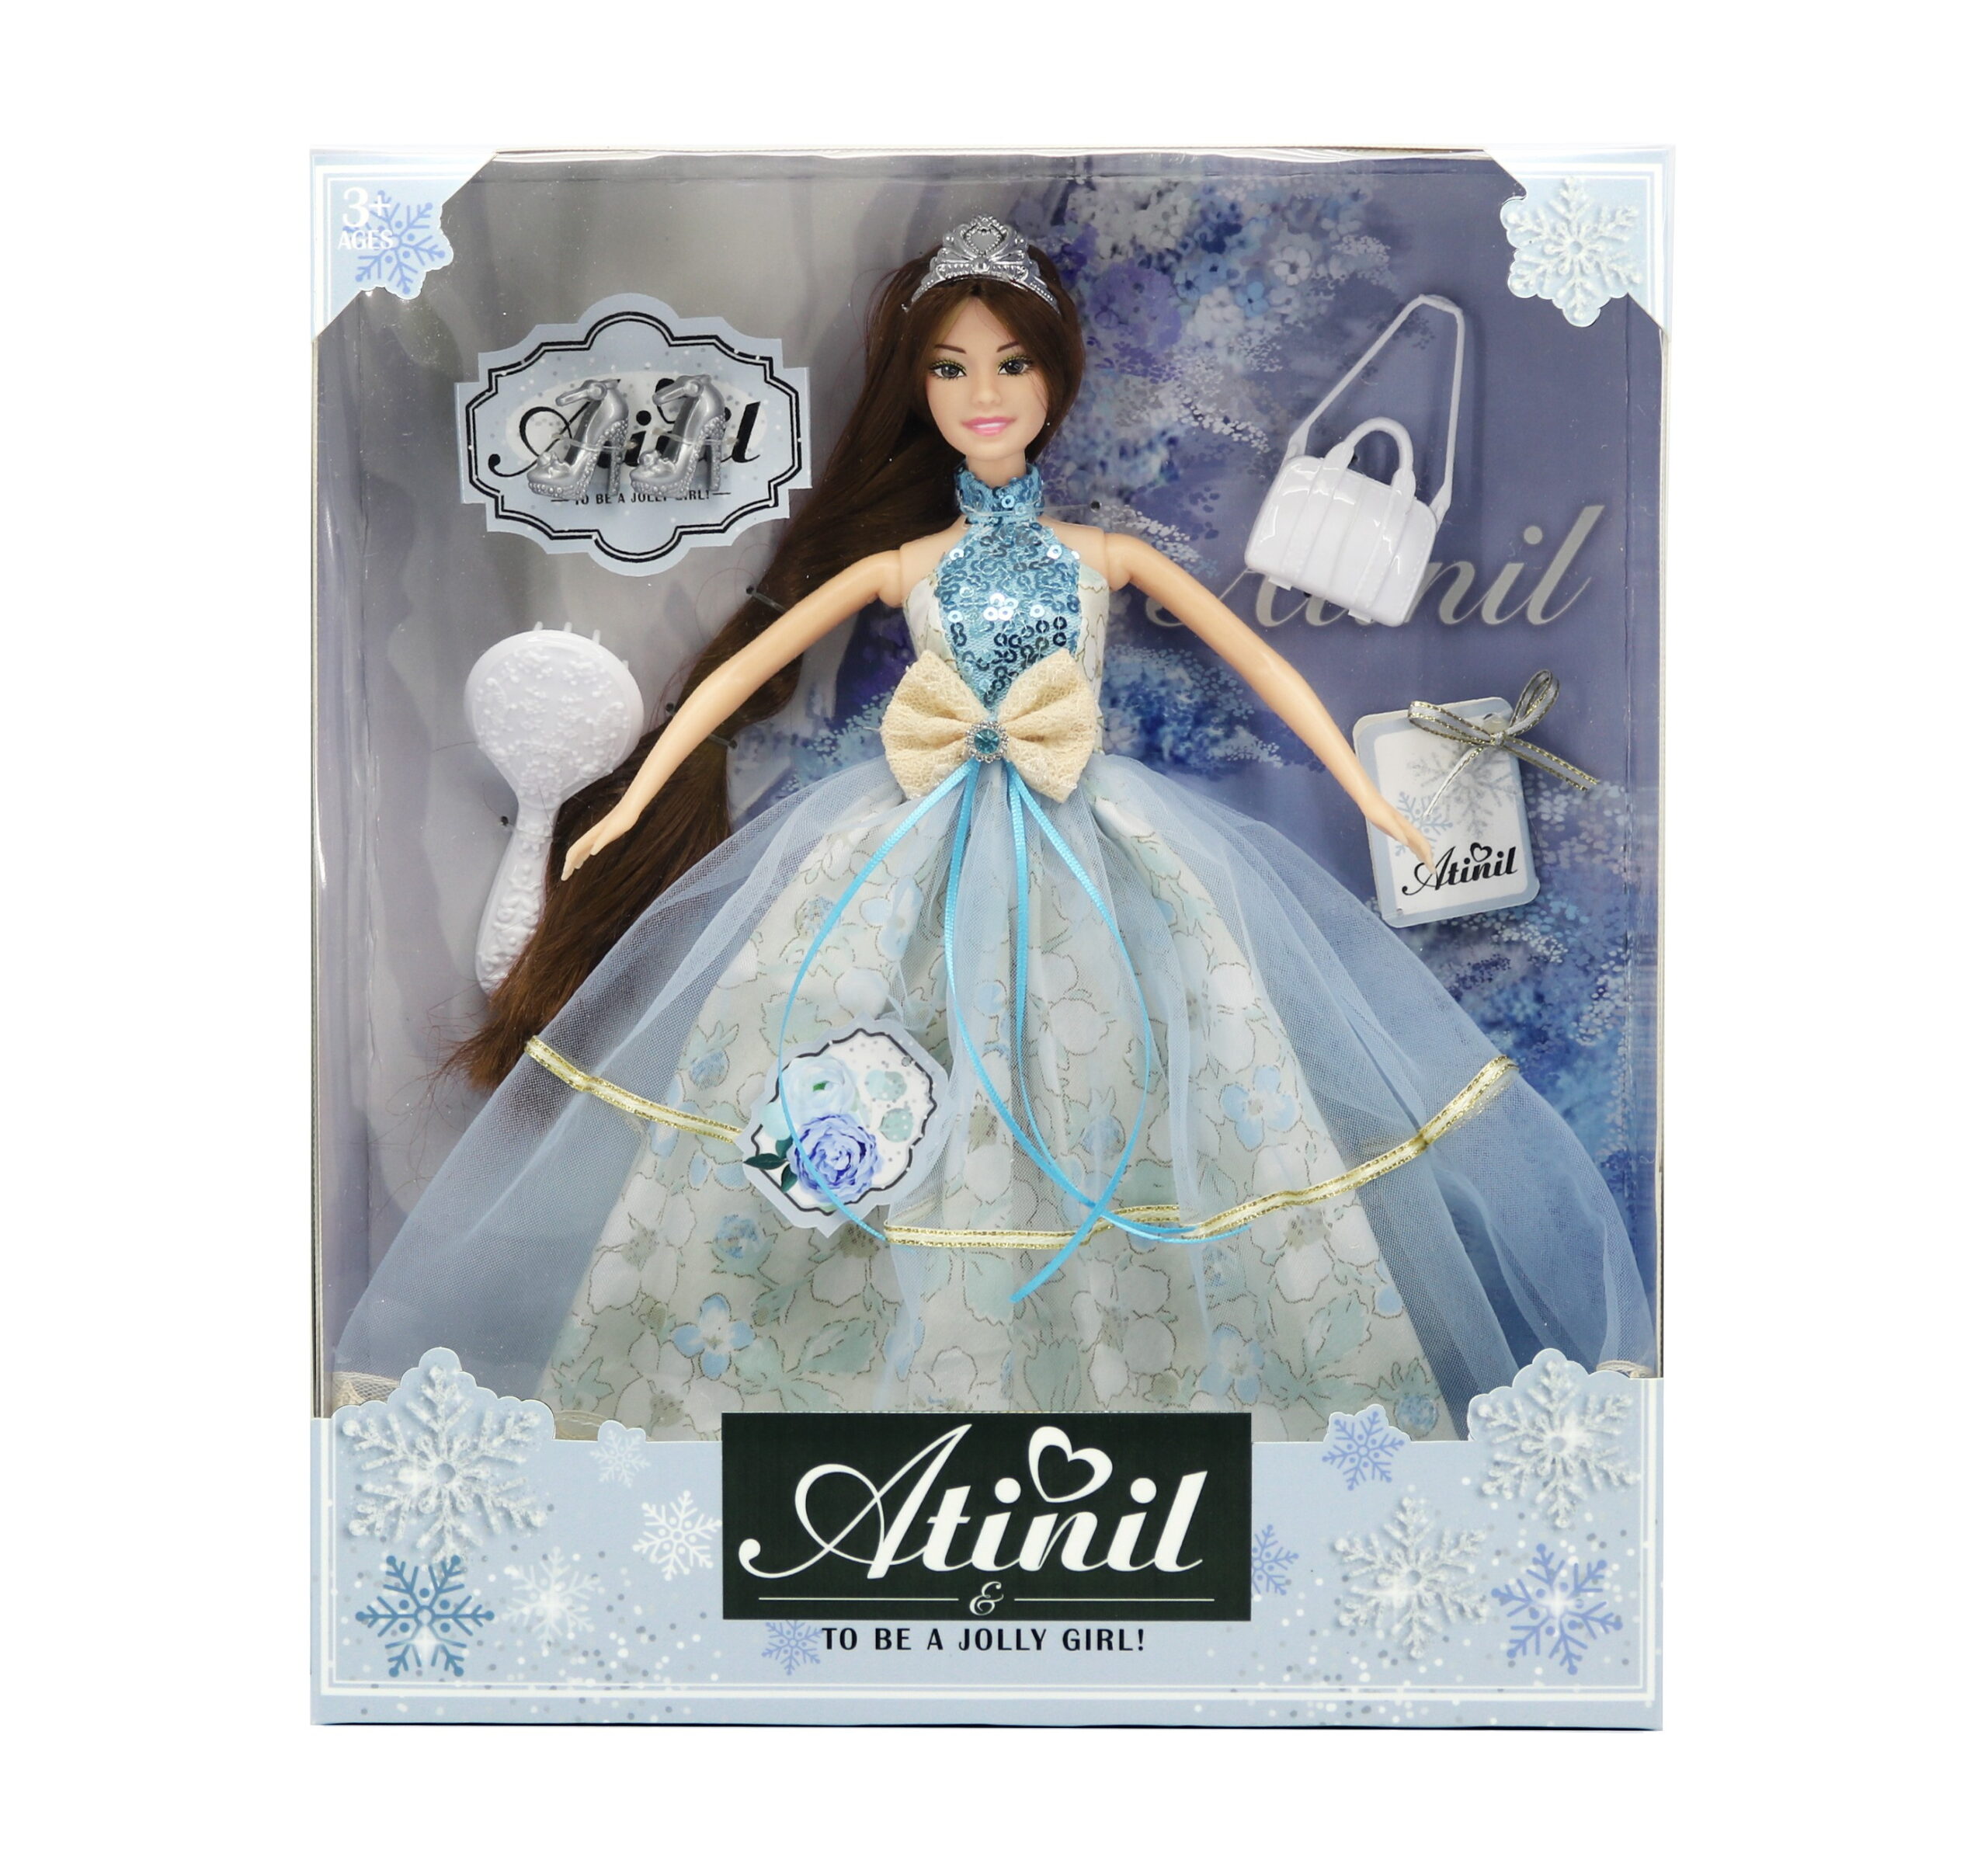 Atinil Princess Doll